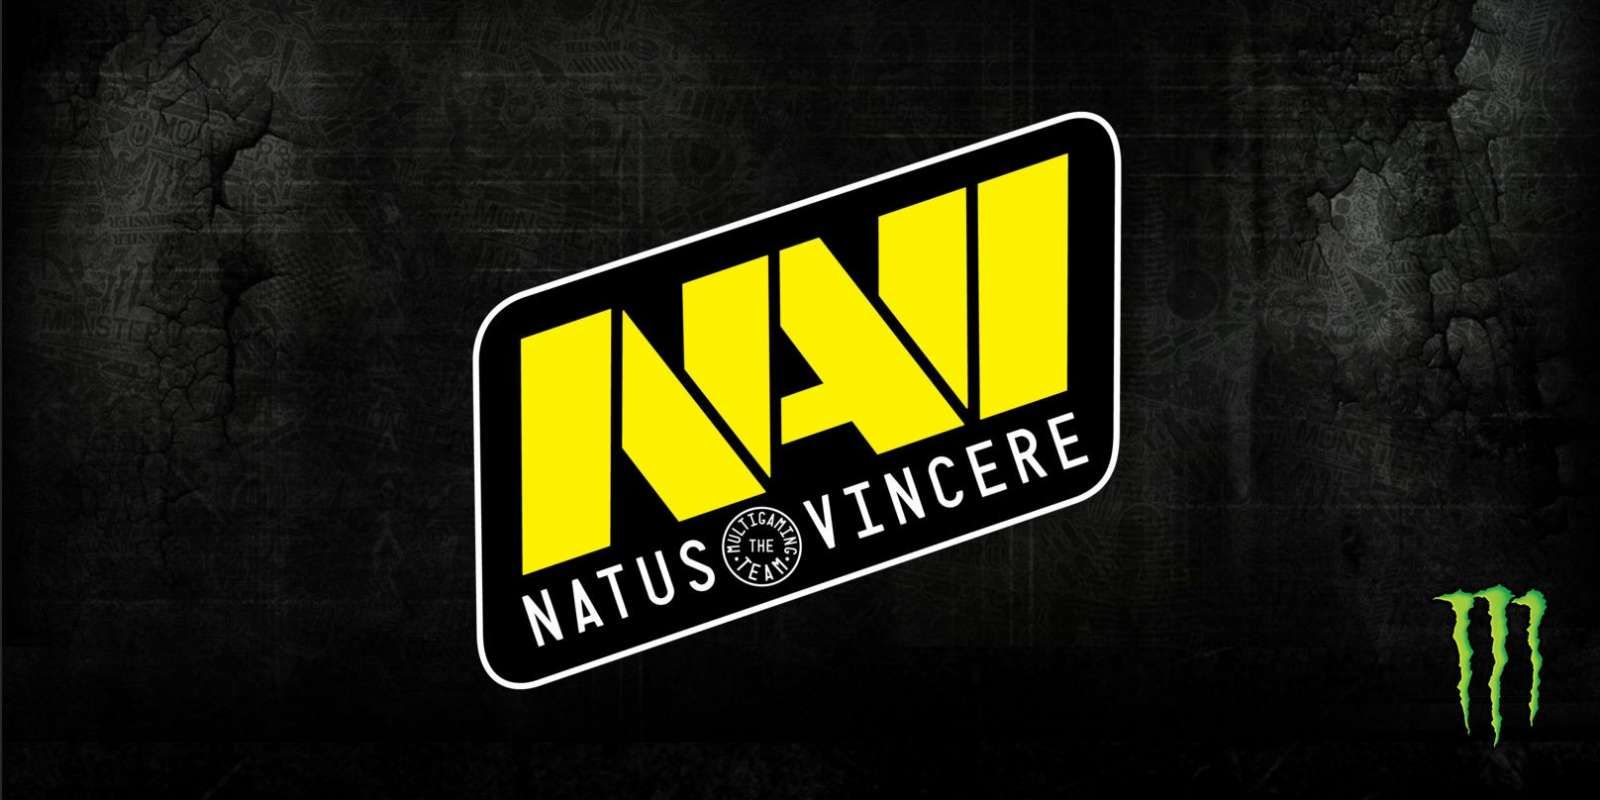 COO NaVi xaoc: фраз в бандле было больше, чем две – ведем переговоры с Valve